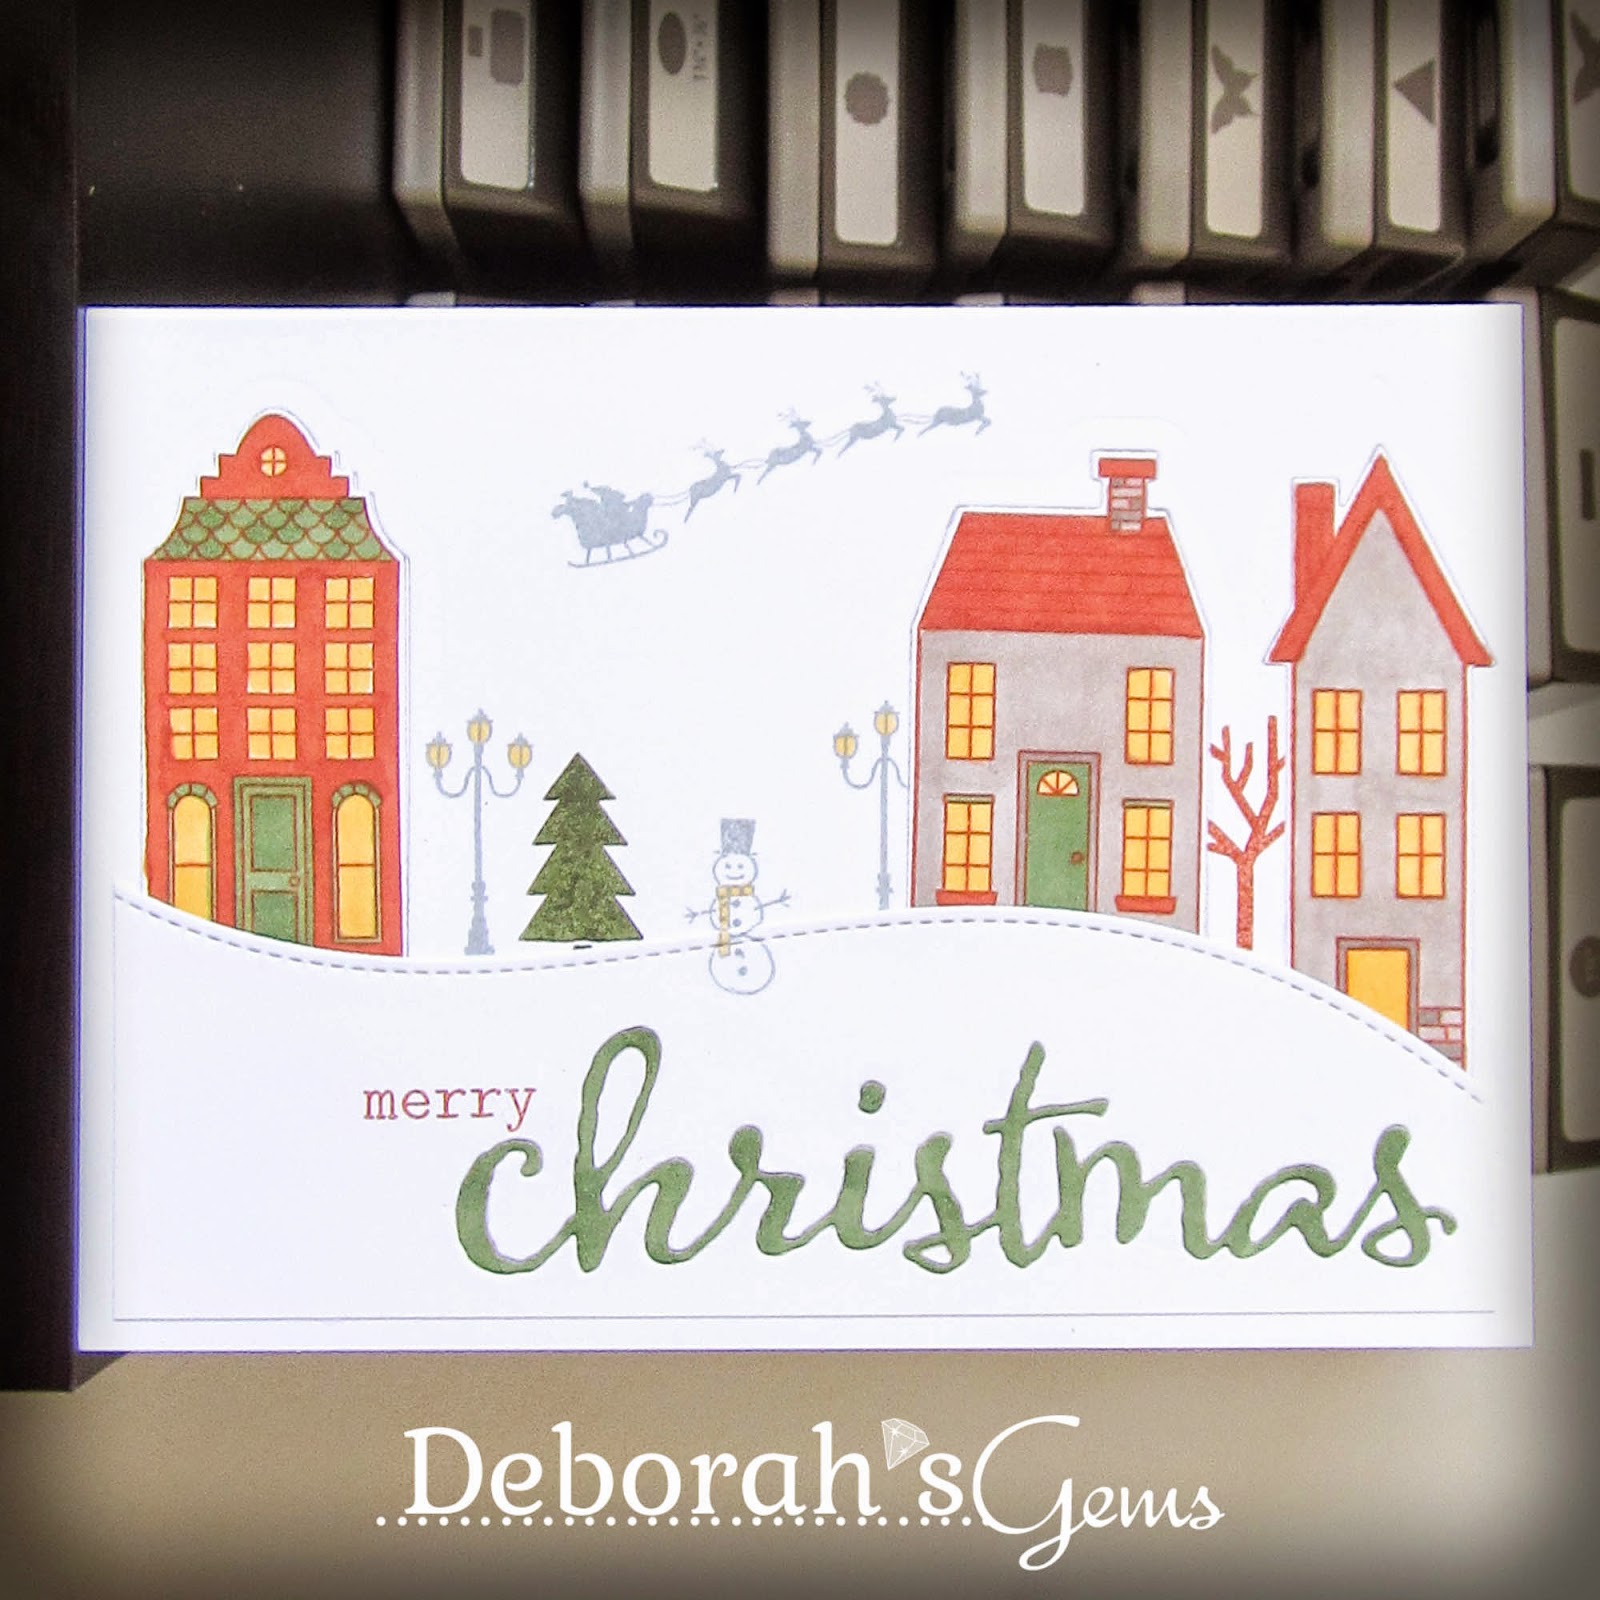 Merry Christmas Sq - photo by Deborah Frings - Deborah's Gems